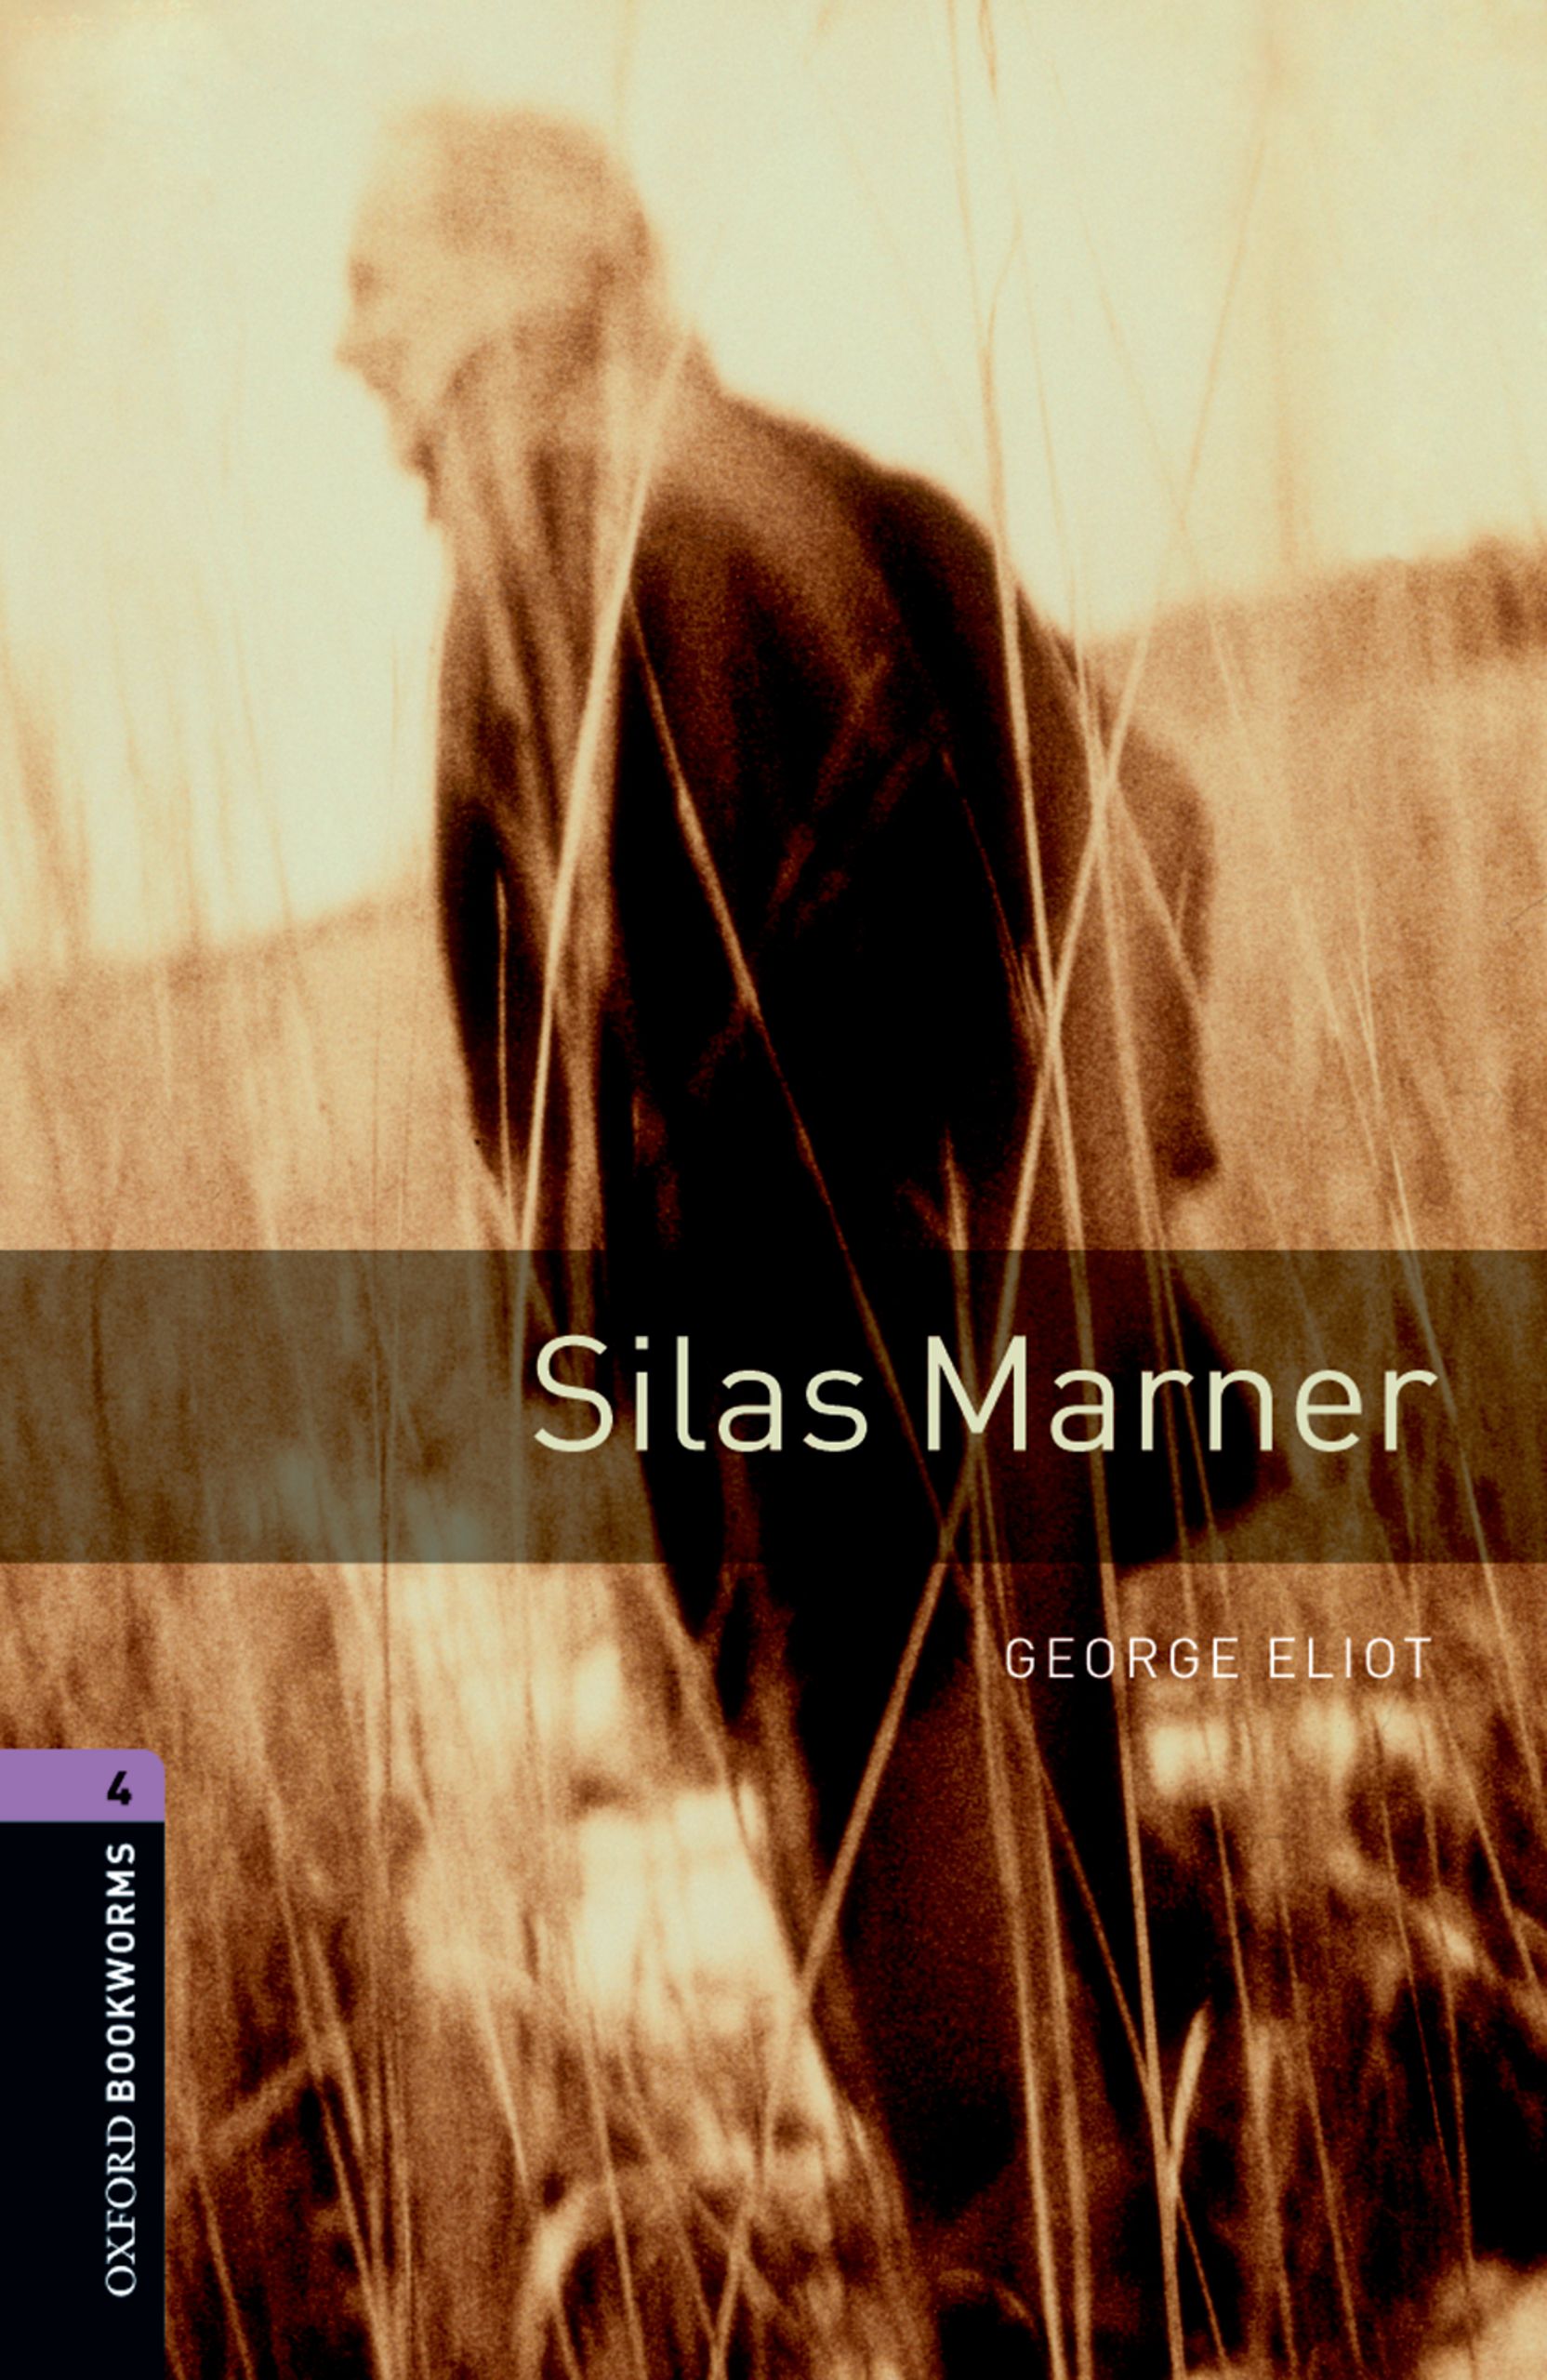 Книга Silas Marner из серии , созданная George Eliot, может относится к жанру Иностранные языки, Зарубежная образовательная литература, Иностранные языки. Стоимость электронной книги Silas Marner с идентификатором 23573566 составляет 405.87 руб.